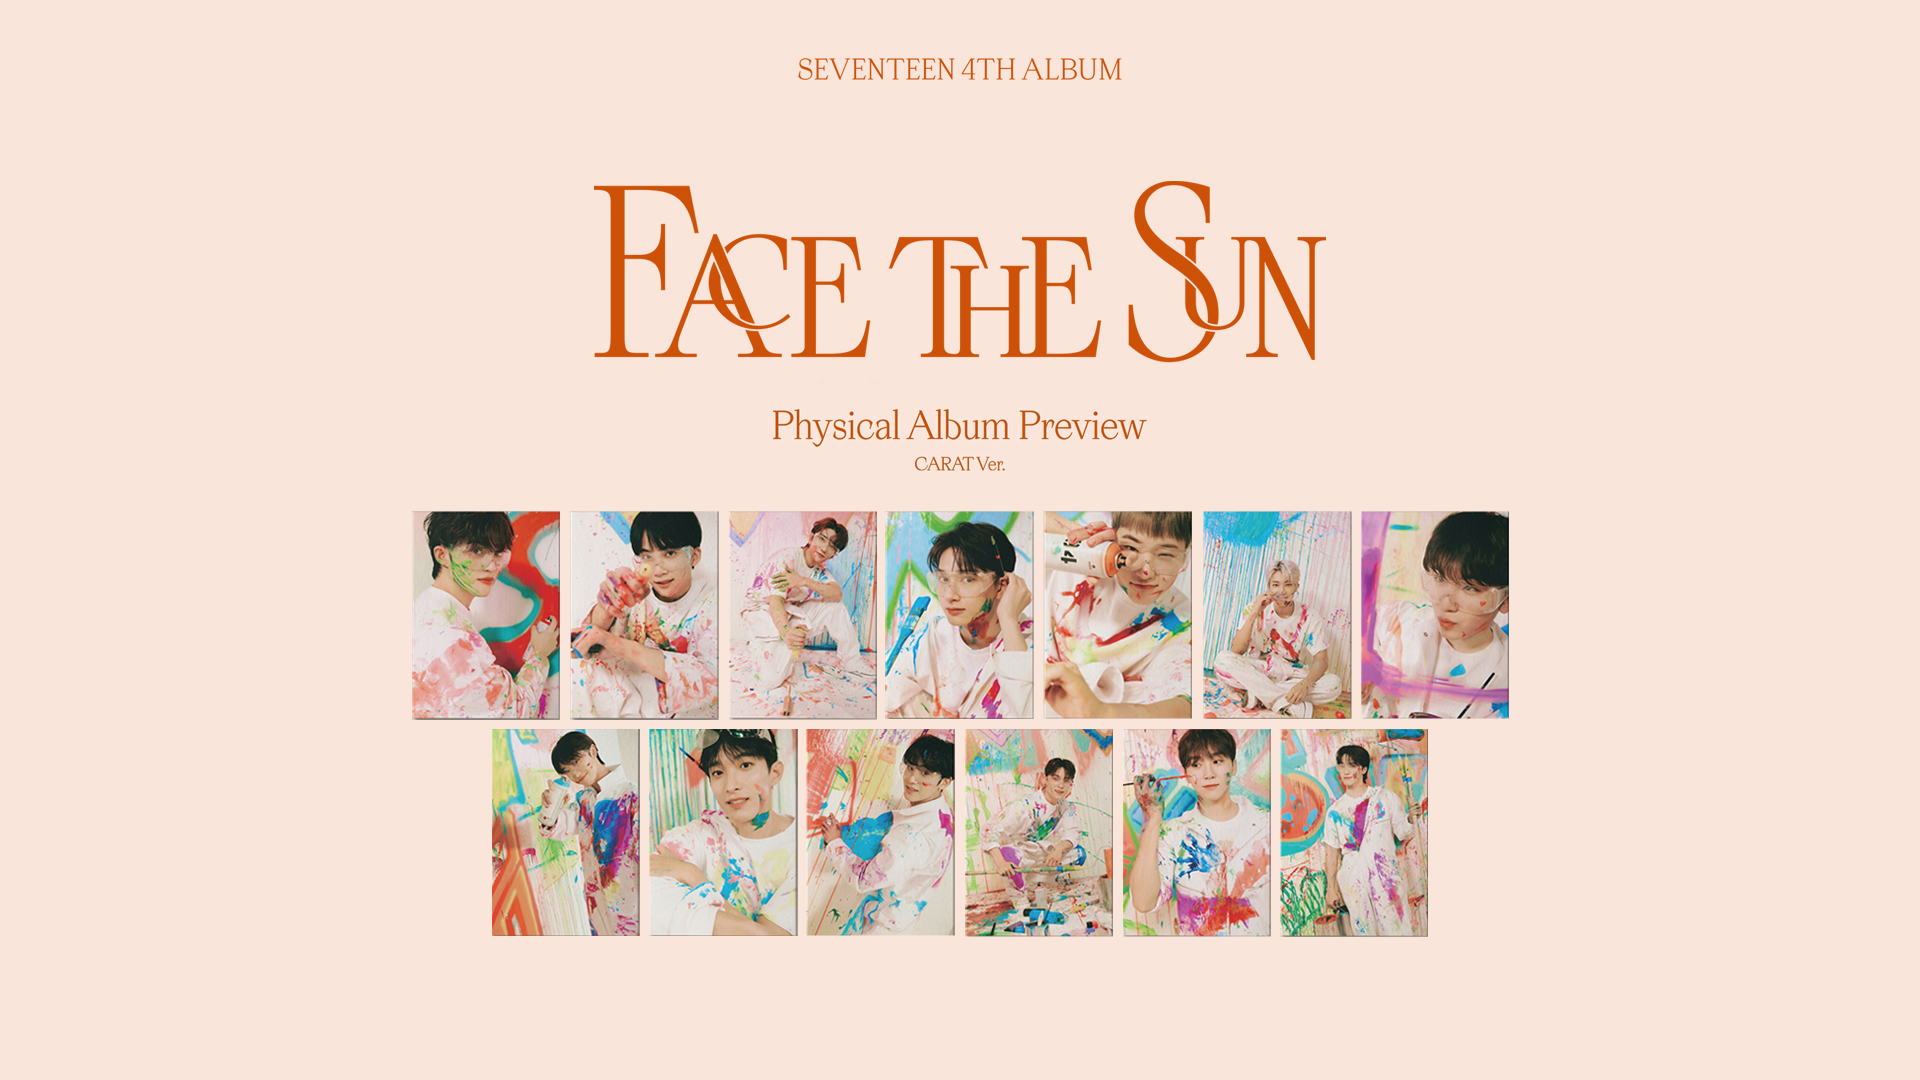 最新の情報 Sun The Face seventeen carat盤 コンプ ユニバ アイドル